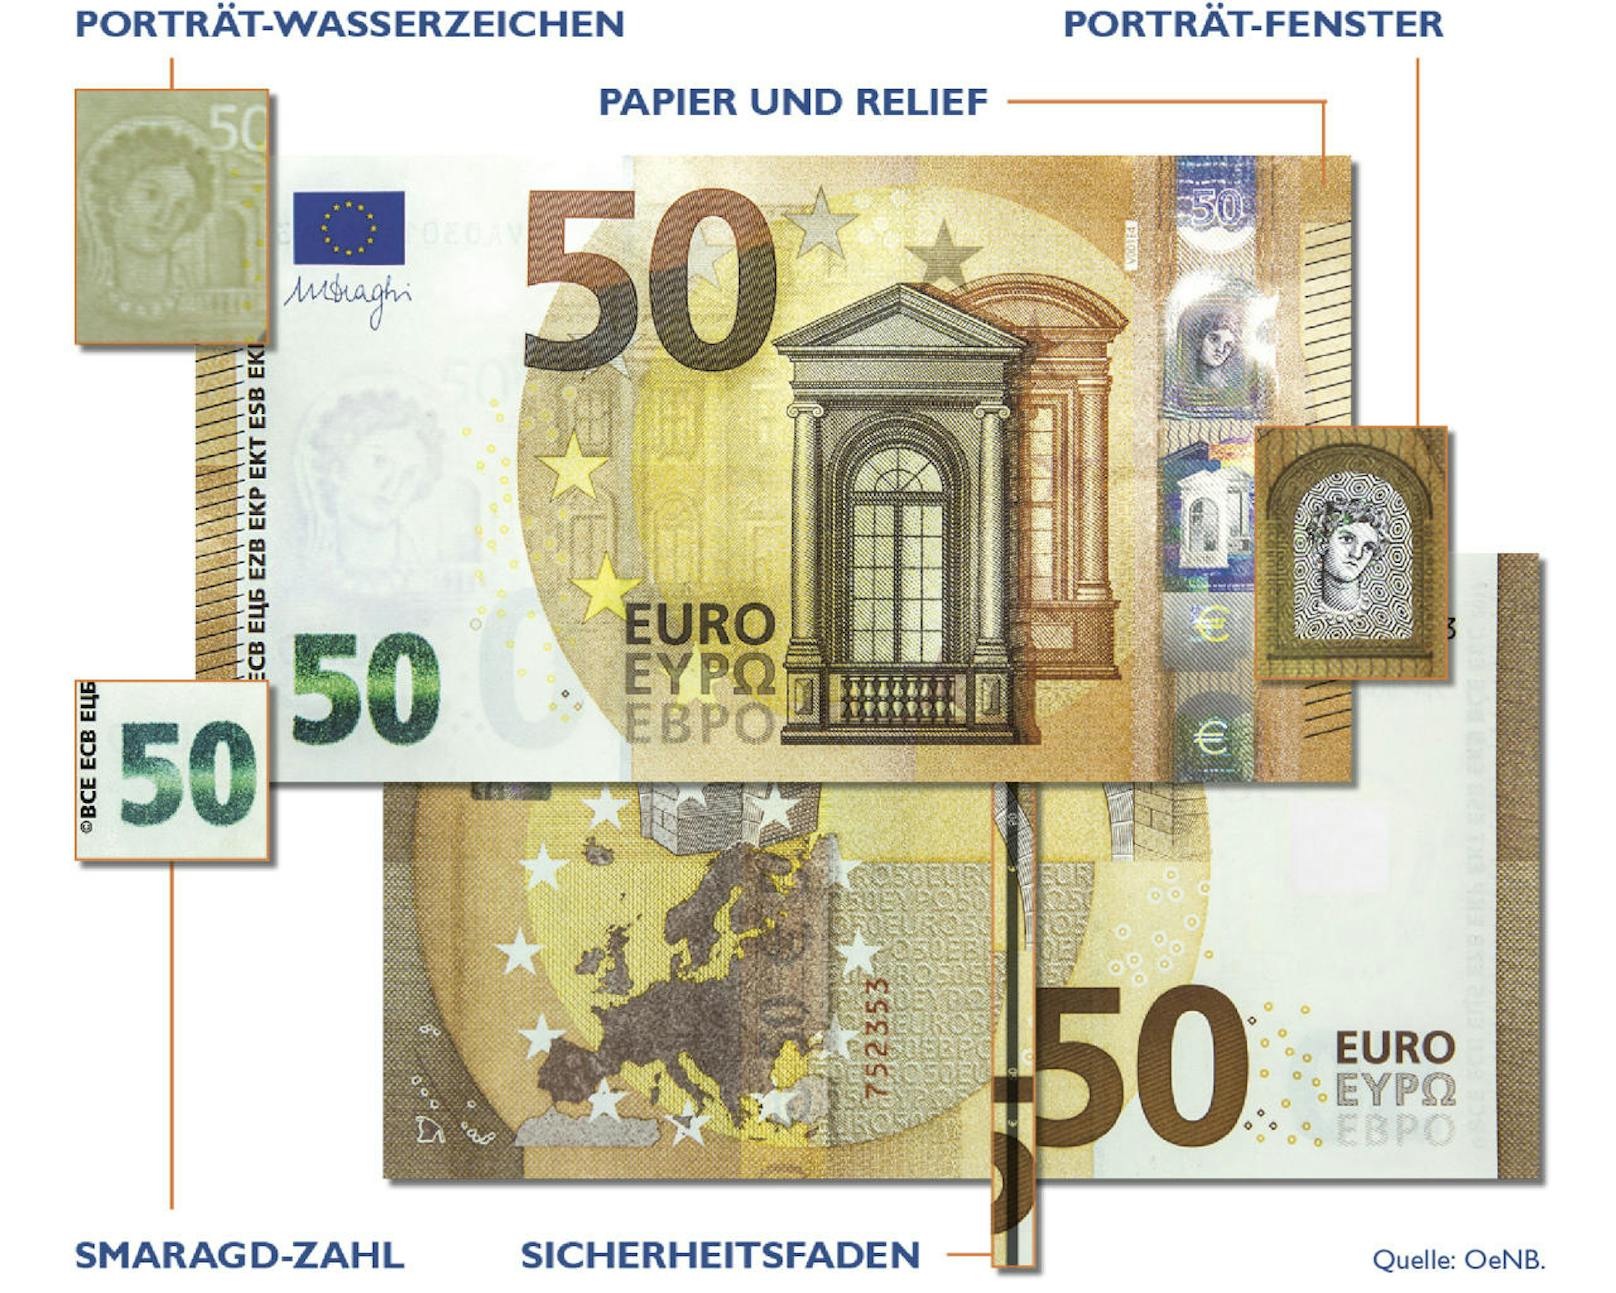 Sicherheitsmerkmale der neuen 50-Euro-Banknote